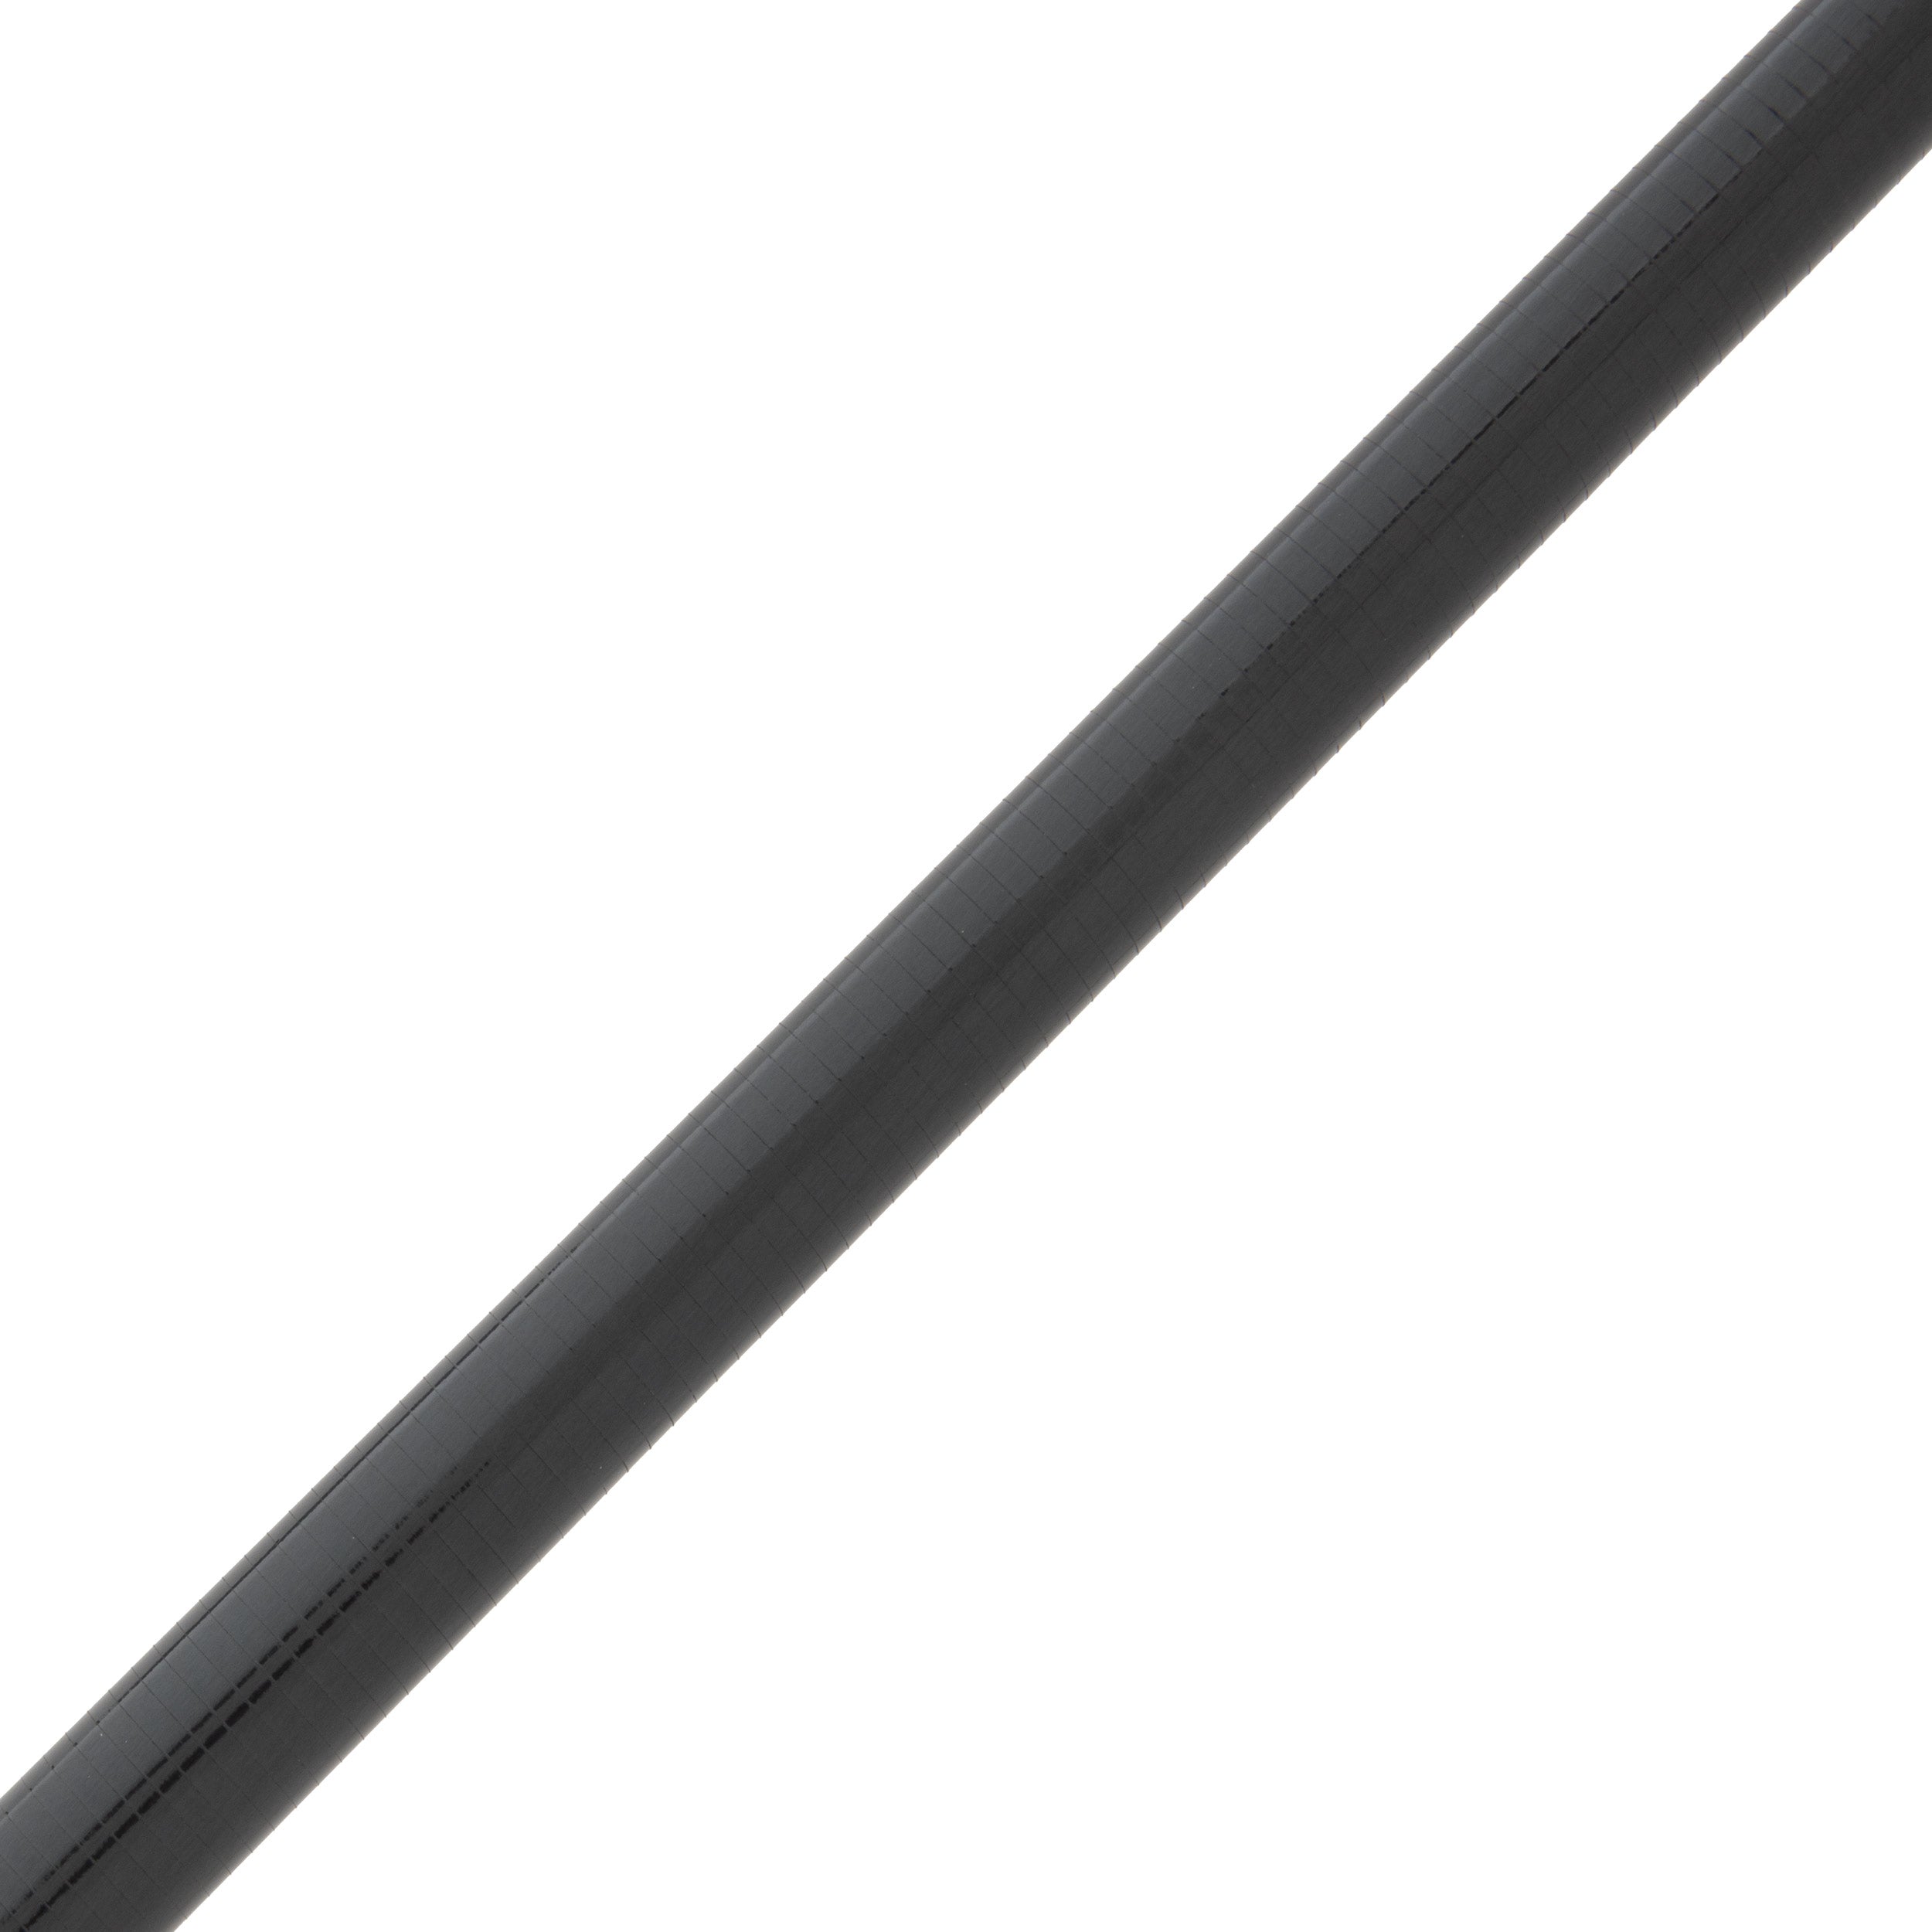 Cashion CR6r Carbon Fiber Flipping Rod Blank - CR6r-iFG906